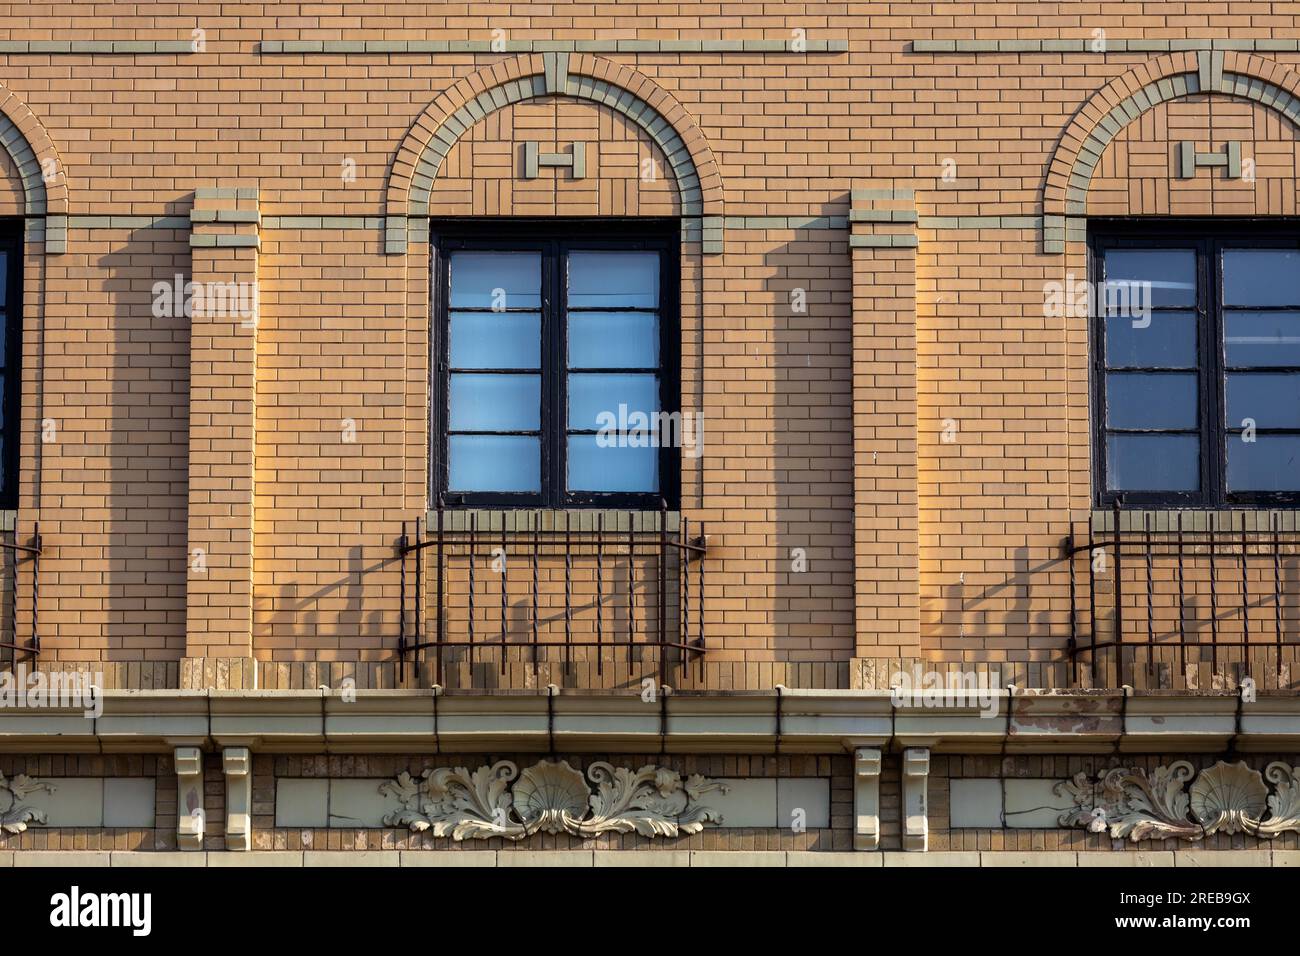 Fond de texture plein cadre d'une belle couleur beige début 20e siècle façade murale en brique de style américain avec des cadres de fenêtre cintrés décoratifs Banque D'Images